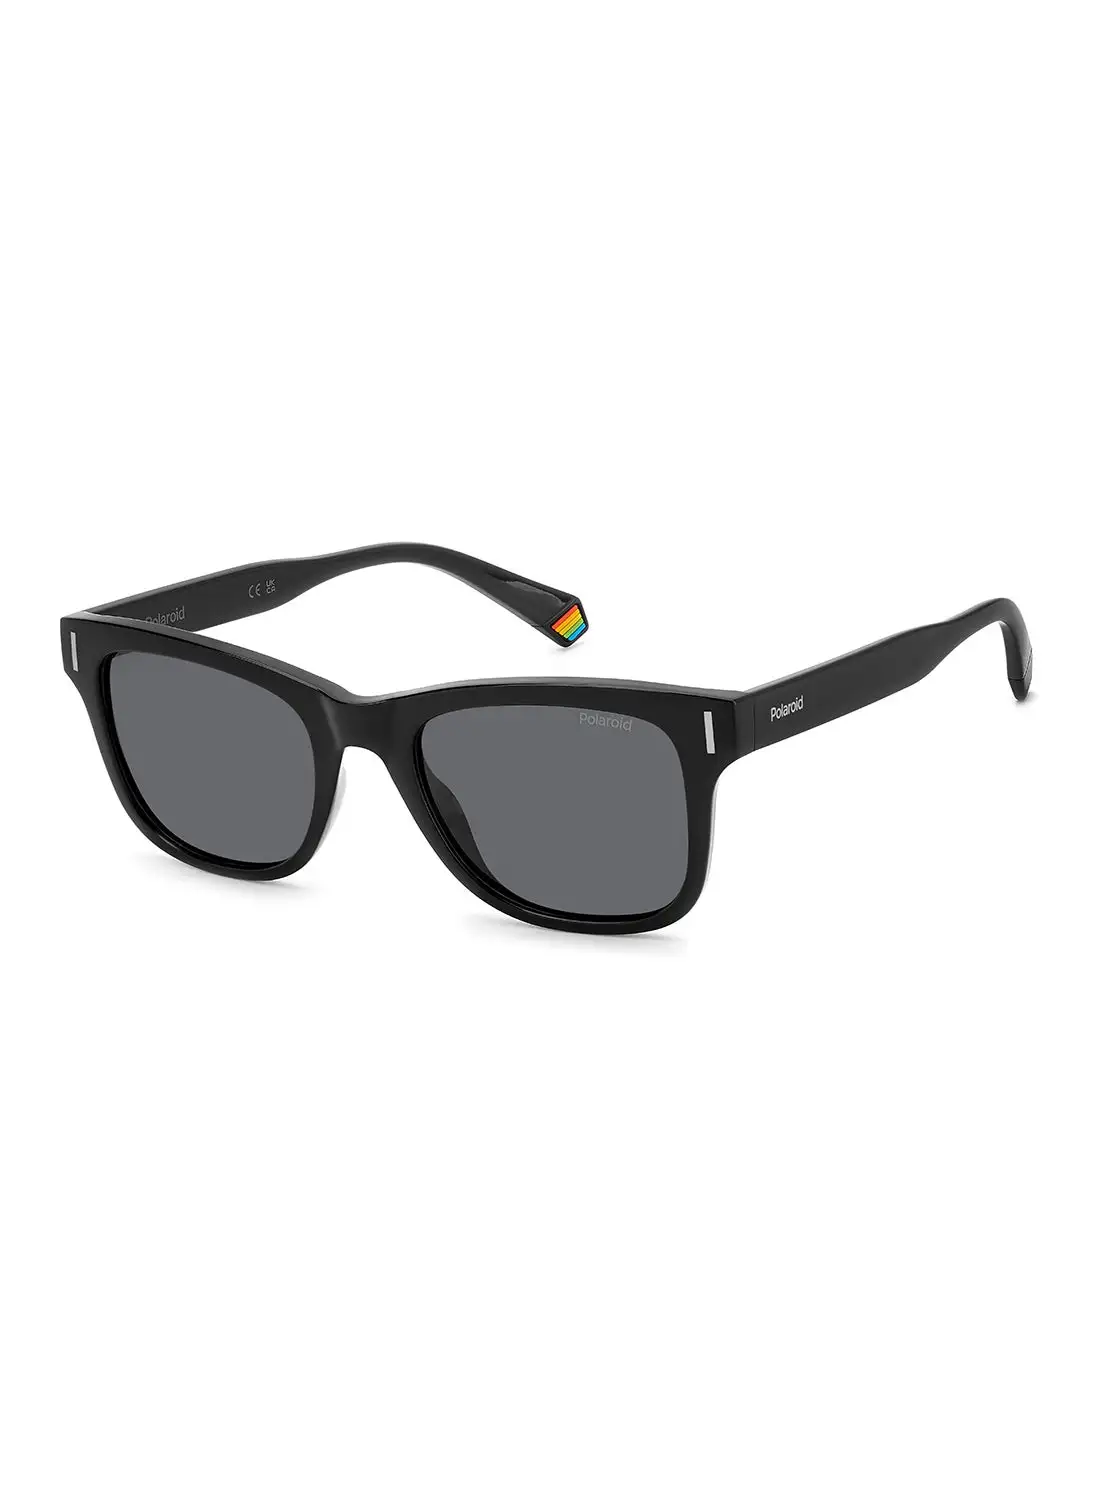 Polaroid Unisex Polarized Rectangular Sunglasses - Pld 6206/S Black Millimeter - Lens Size: 51 Mm